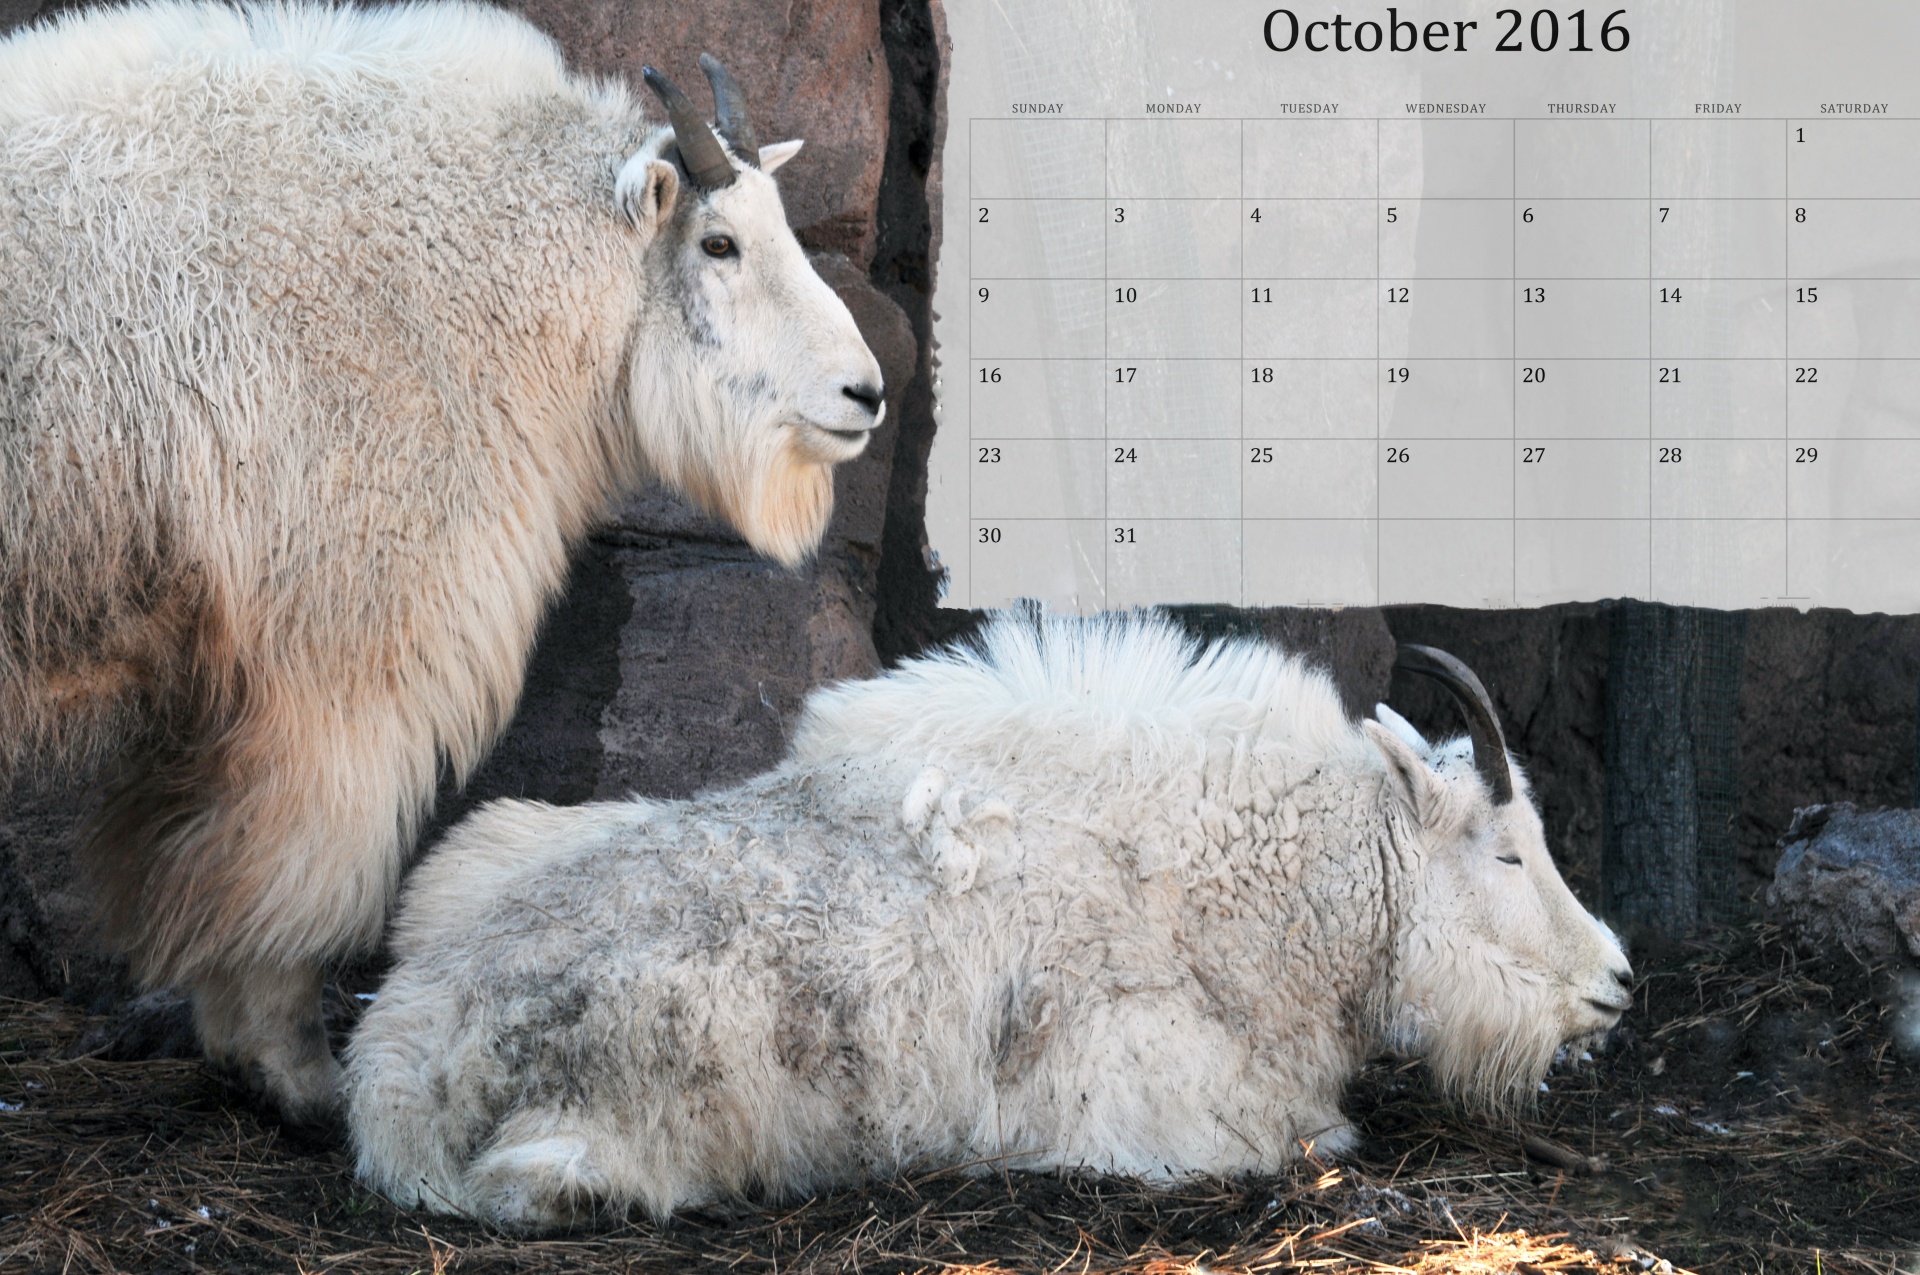 October 2016 Calendar Of Goats